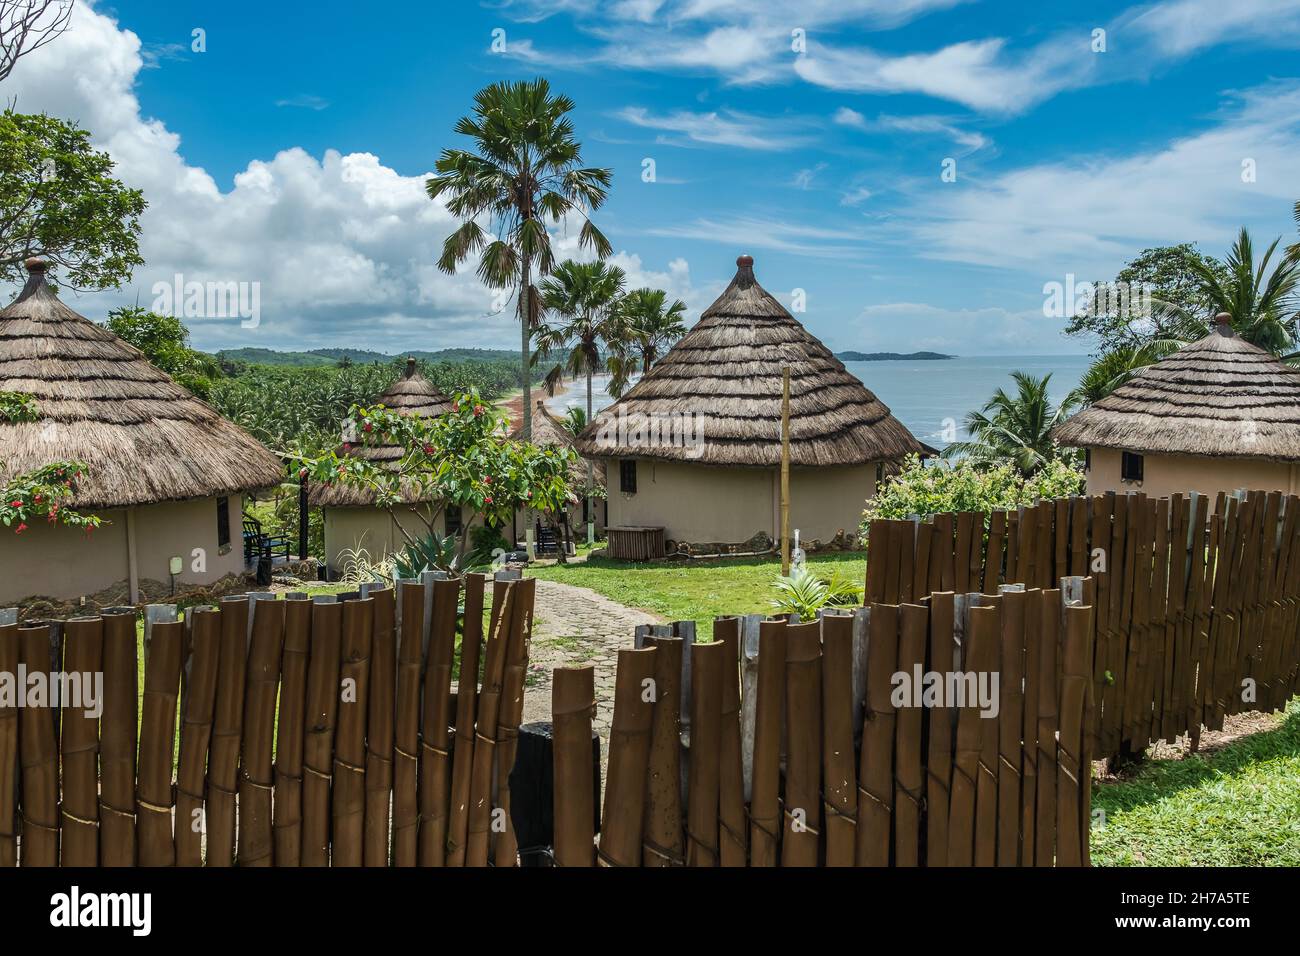 Afrikanischer Bungalow mit Reetdach und in alter Tradition auf einem Hügel in Axim mit Blick auf das Meer in Ghana Westafrika gebaut Stockfoto